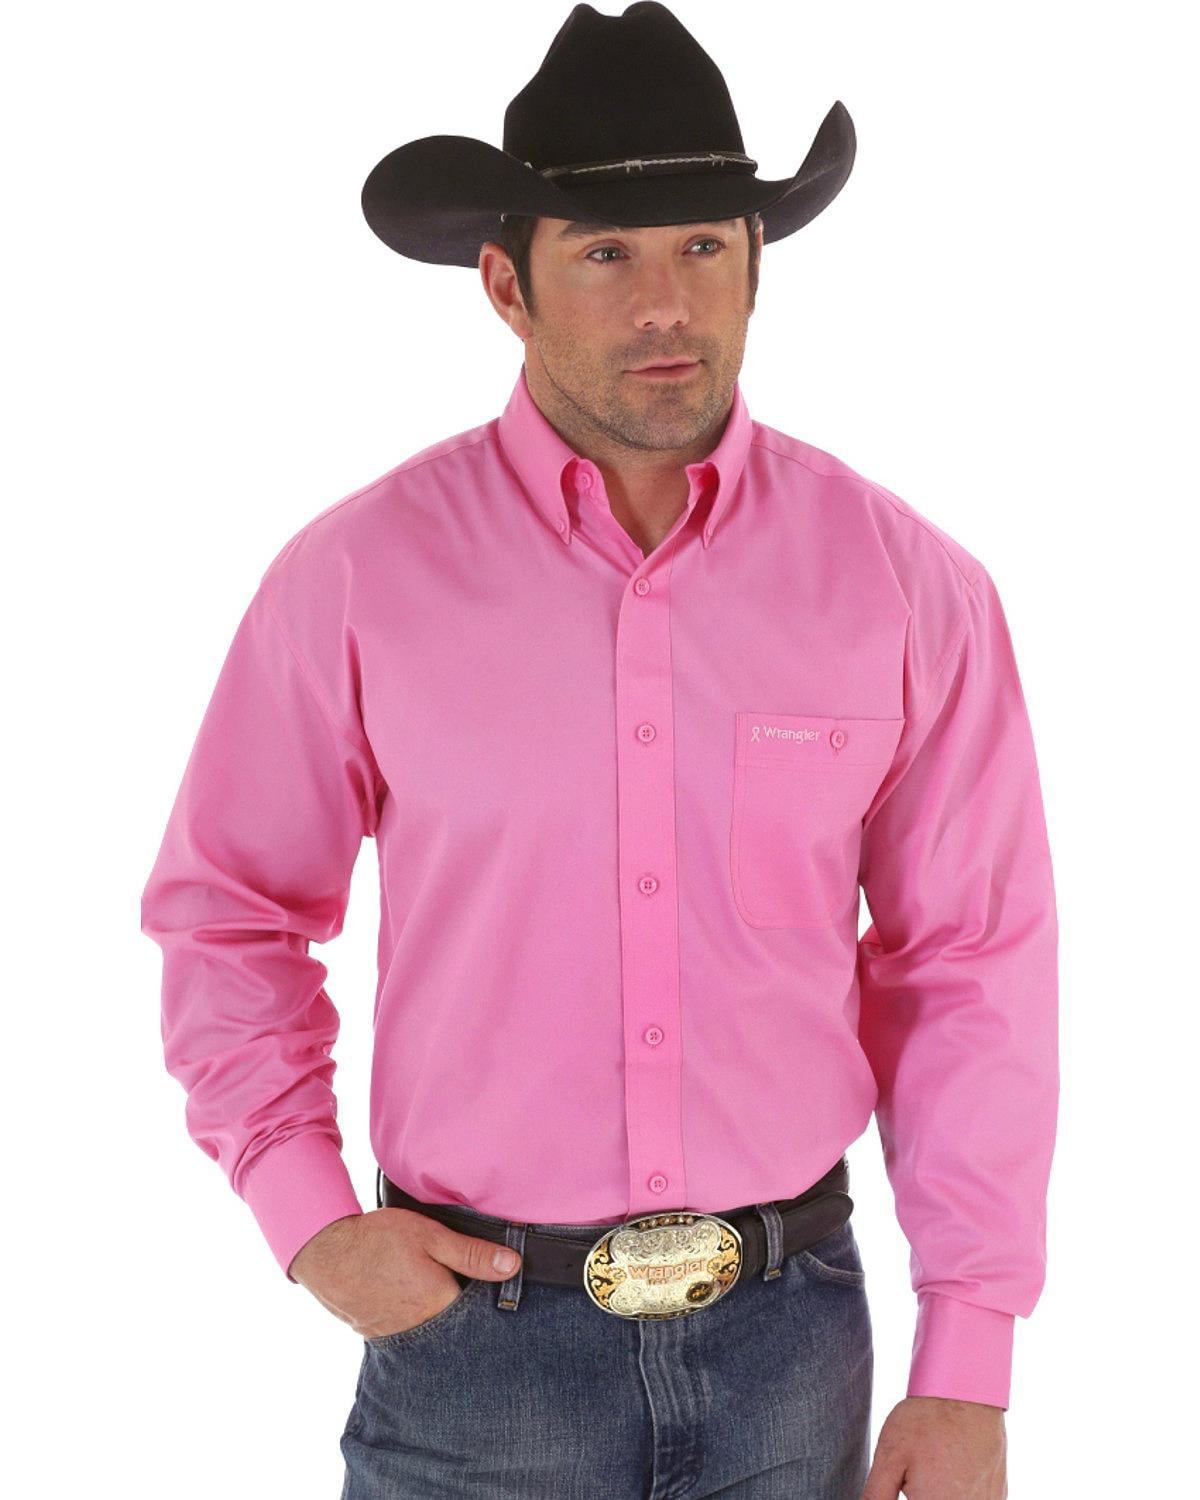 Men's Tough Enough To Wear Pink Western Shirt - Mtp242k 